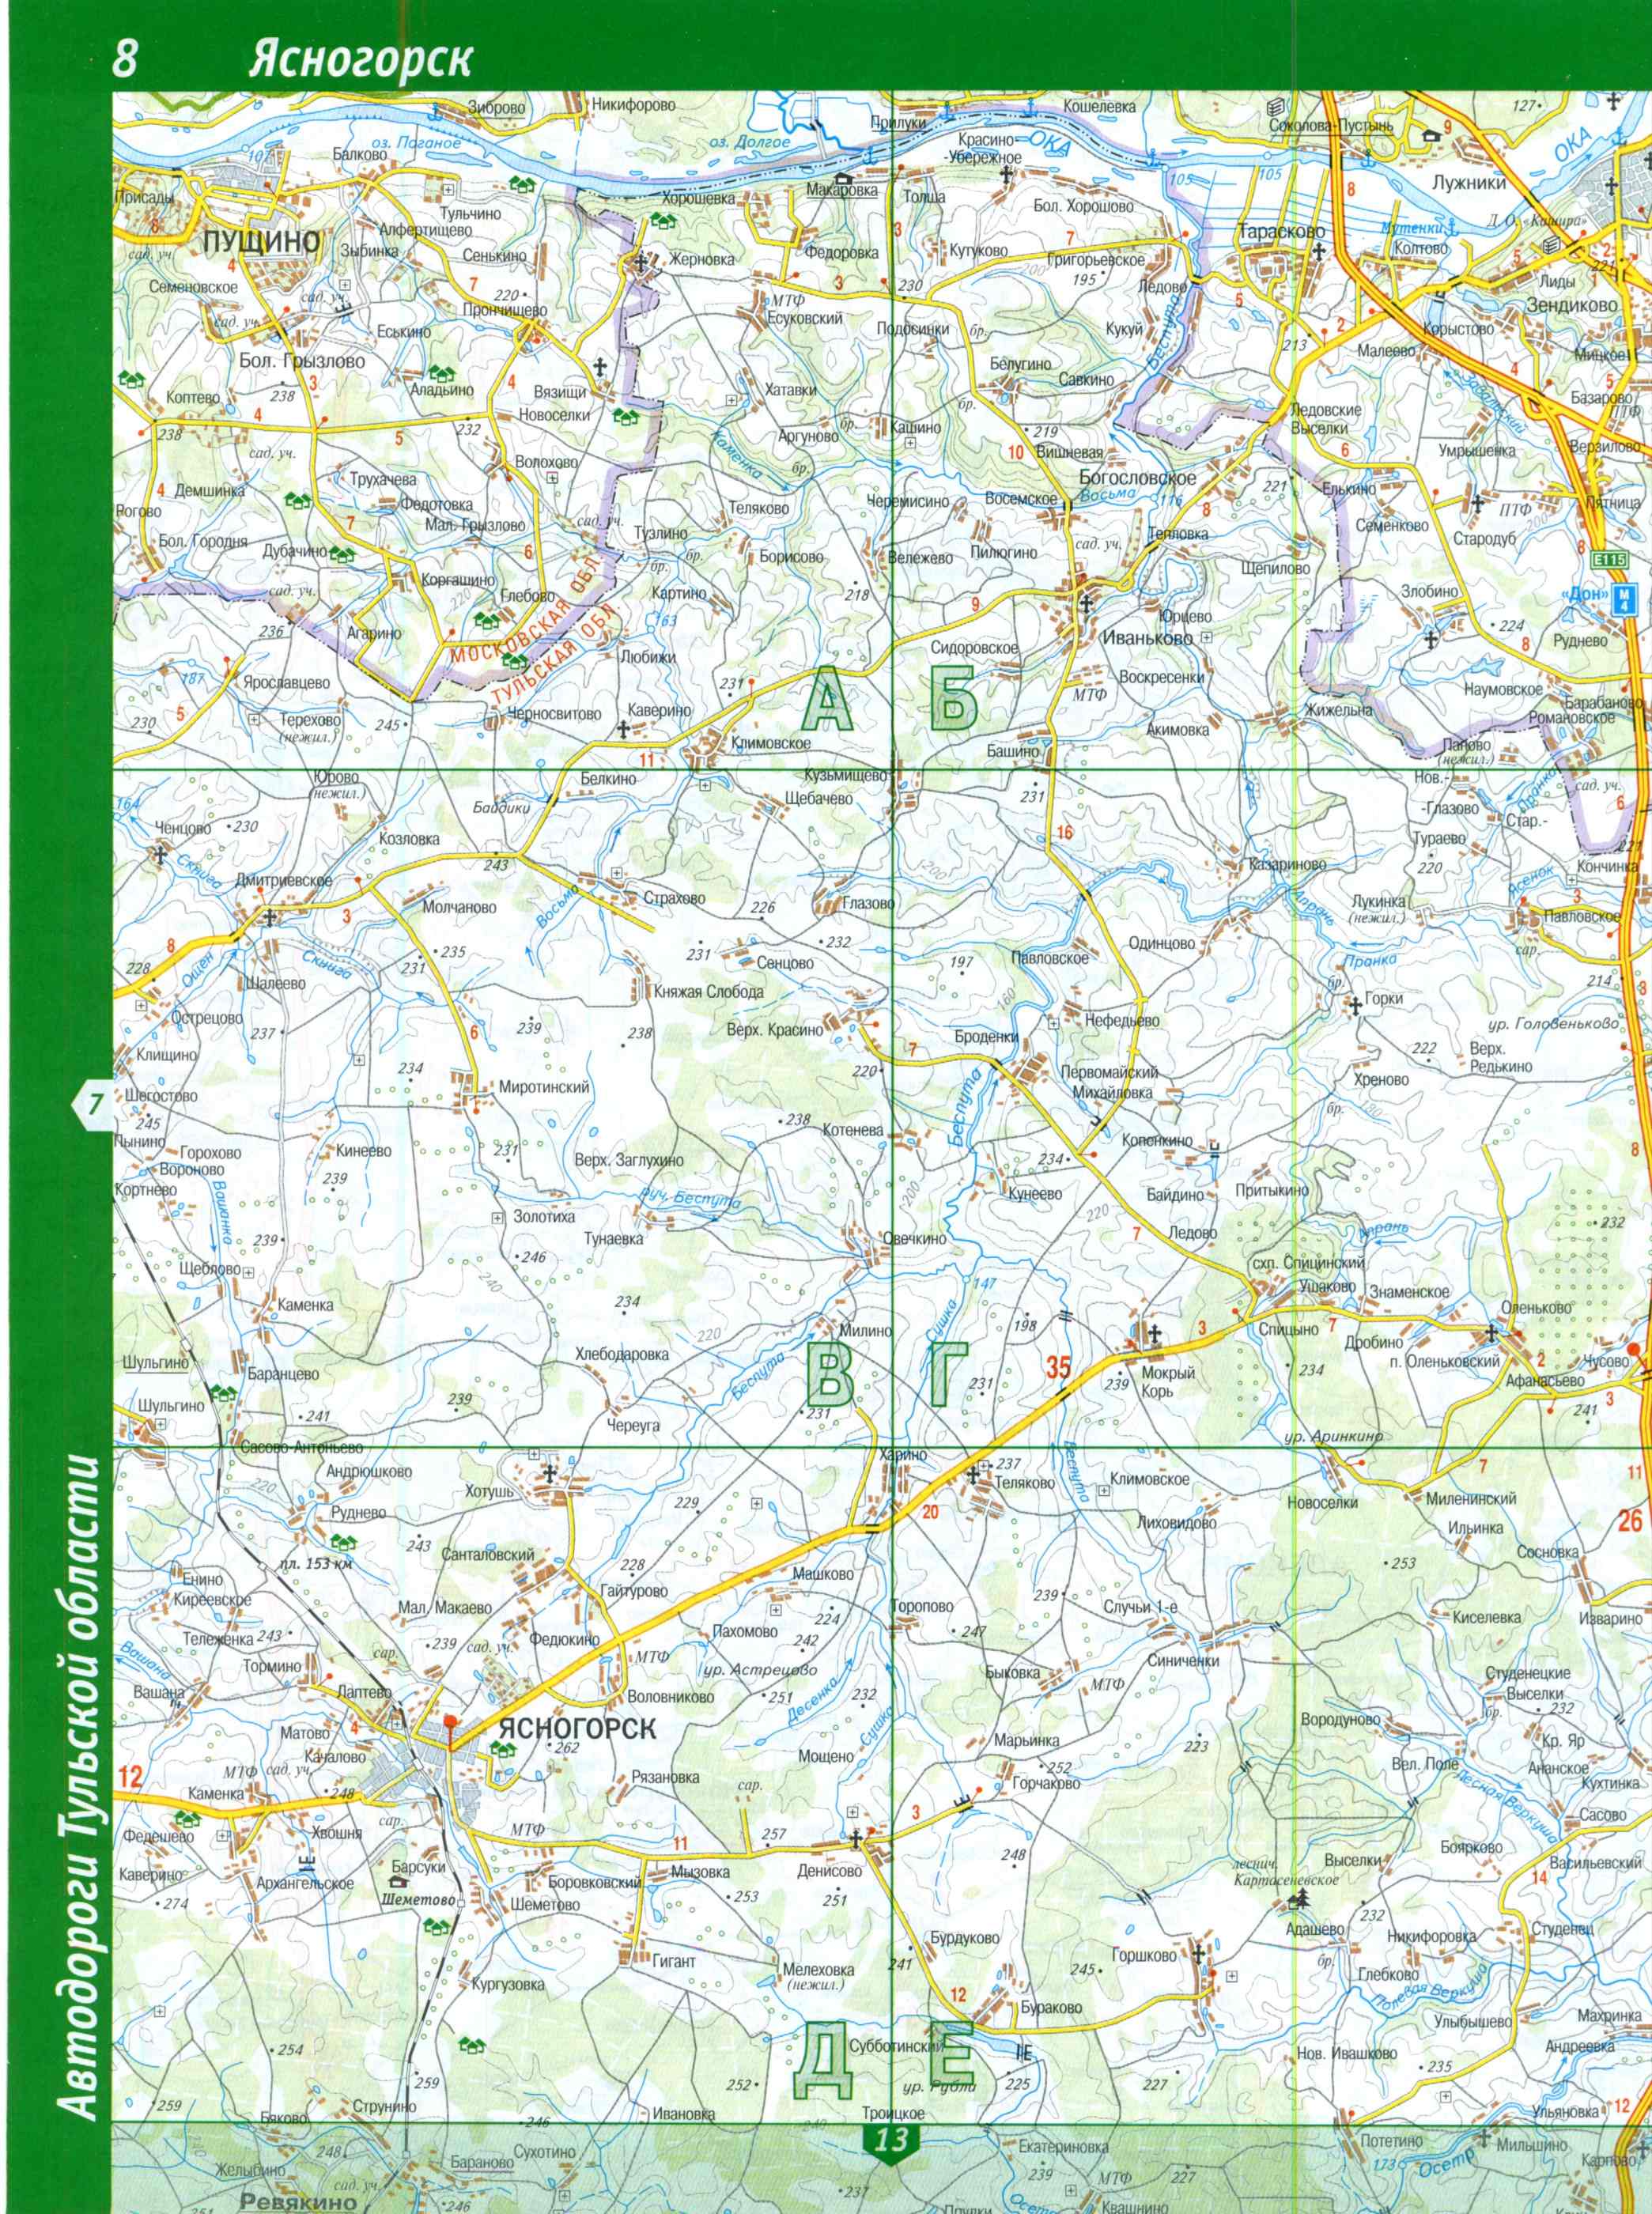 Карта Тульской области топографическая. Подробная топографическая карта Тульской области масштаба 1см:2км, C0 - 